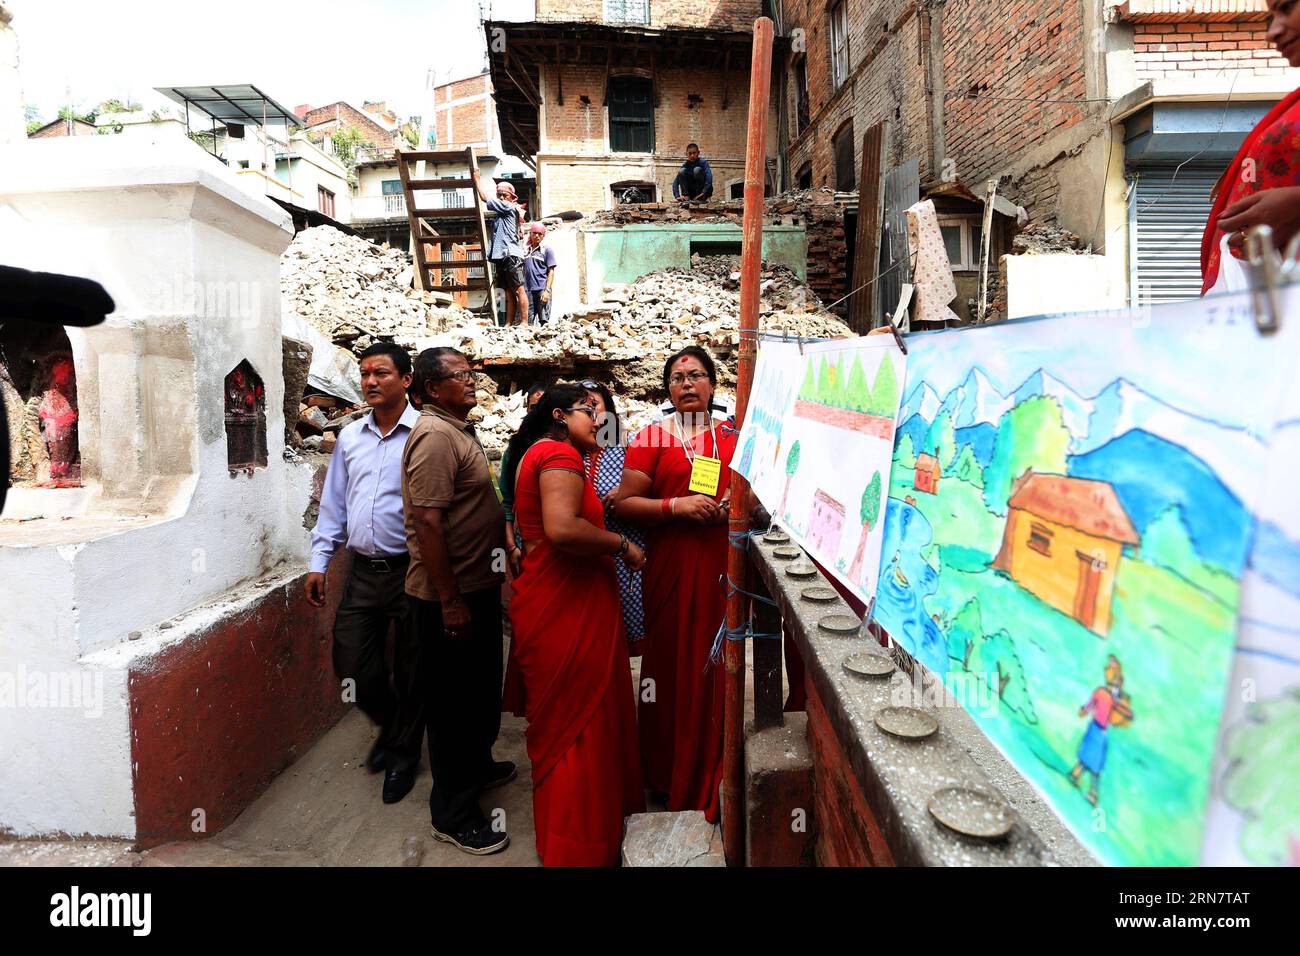 Le persone guardano le opere d'arte a una competizione d'arte sul tema terremoto e ricostruzione a Kathmandu, capitale del Nepal, il 19 settembre 2015. Più di 150 bambini hanno partecipato al concorso per esprimere i loro sentimenti sul terremoto e l'ulteriore ricostruzione attraverso le arti. NEPAL-KATHMANDU-RECONSTRUCTION-ART COMPETITION SunilxSharma PUBLICATIONxNOTxINxCHN Celebrities Look ON Art Works AT to Art Competition of the Theme Earthquake and Reconstruction a Kathmandu capitale del Nepal IL 19 settembre 2015 più di 150 bambini hanno partecipato al Concorso per la spedizione dei loro sentimenti Foto Stock